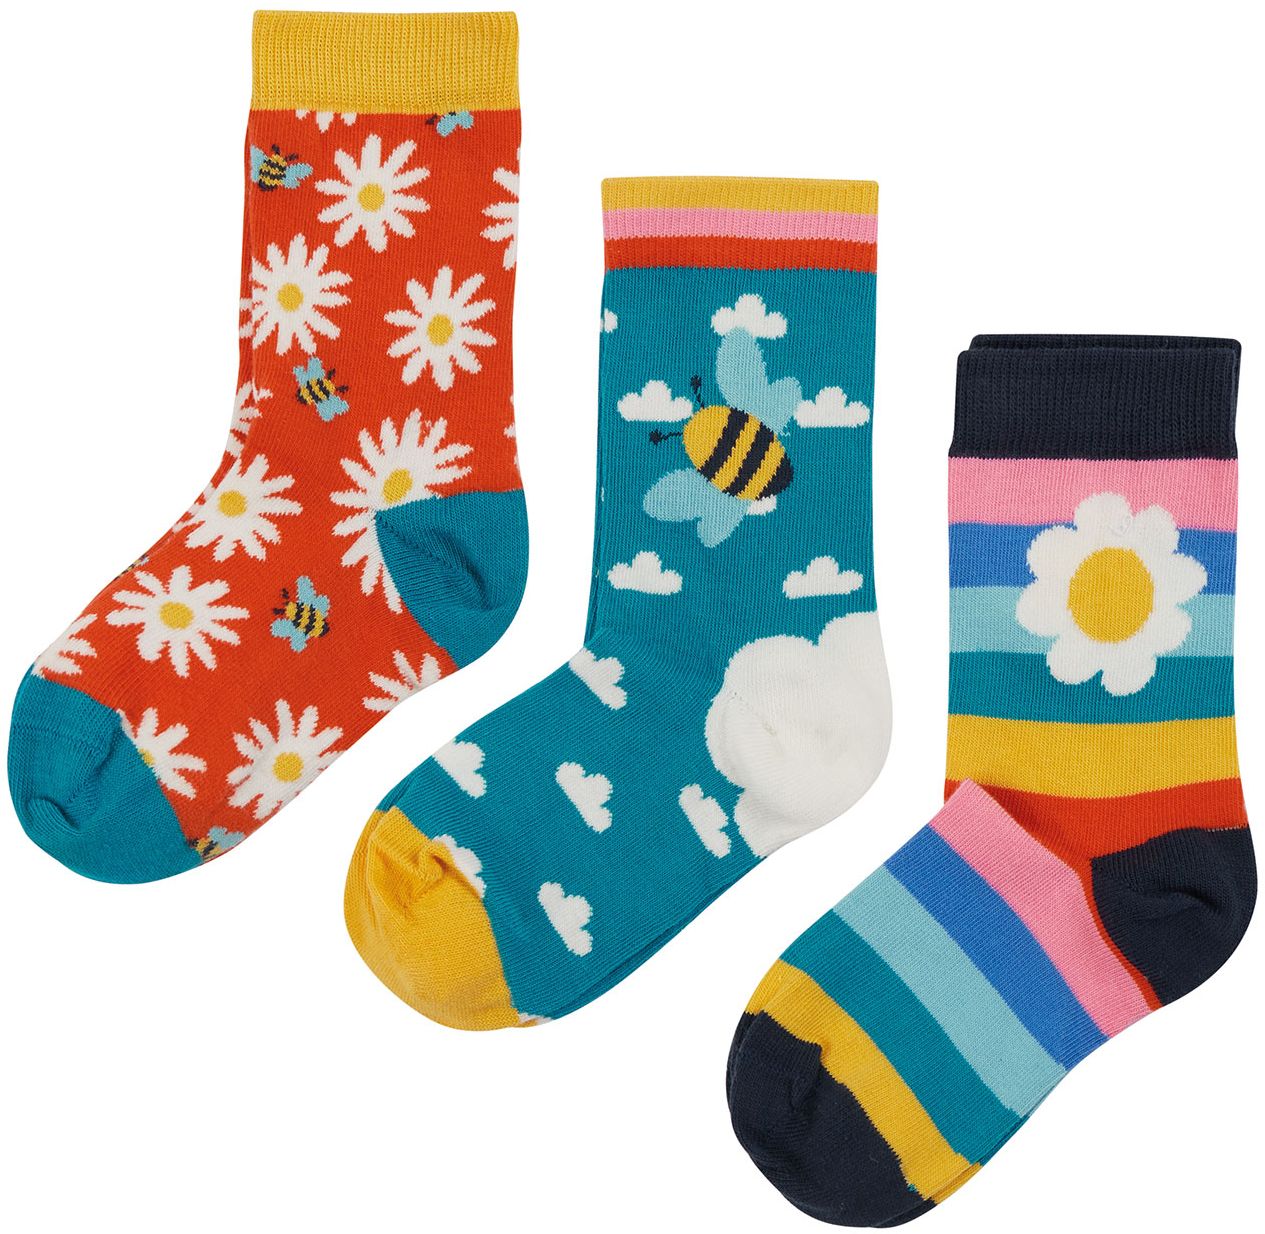 Gemusterte Socken im 3er-Pack mit Blumen und Bienen